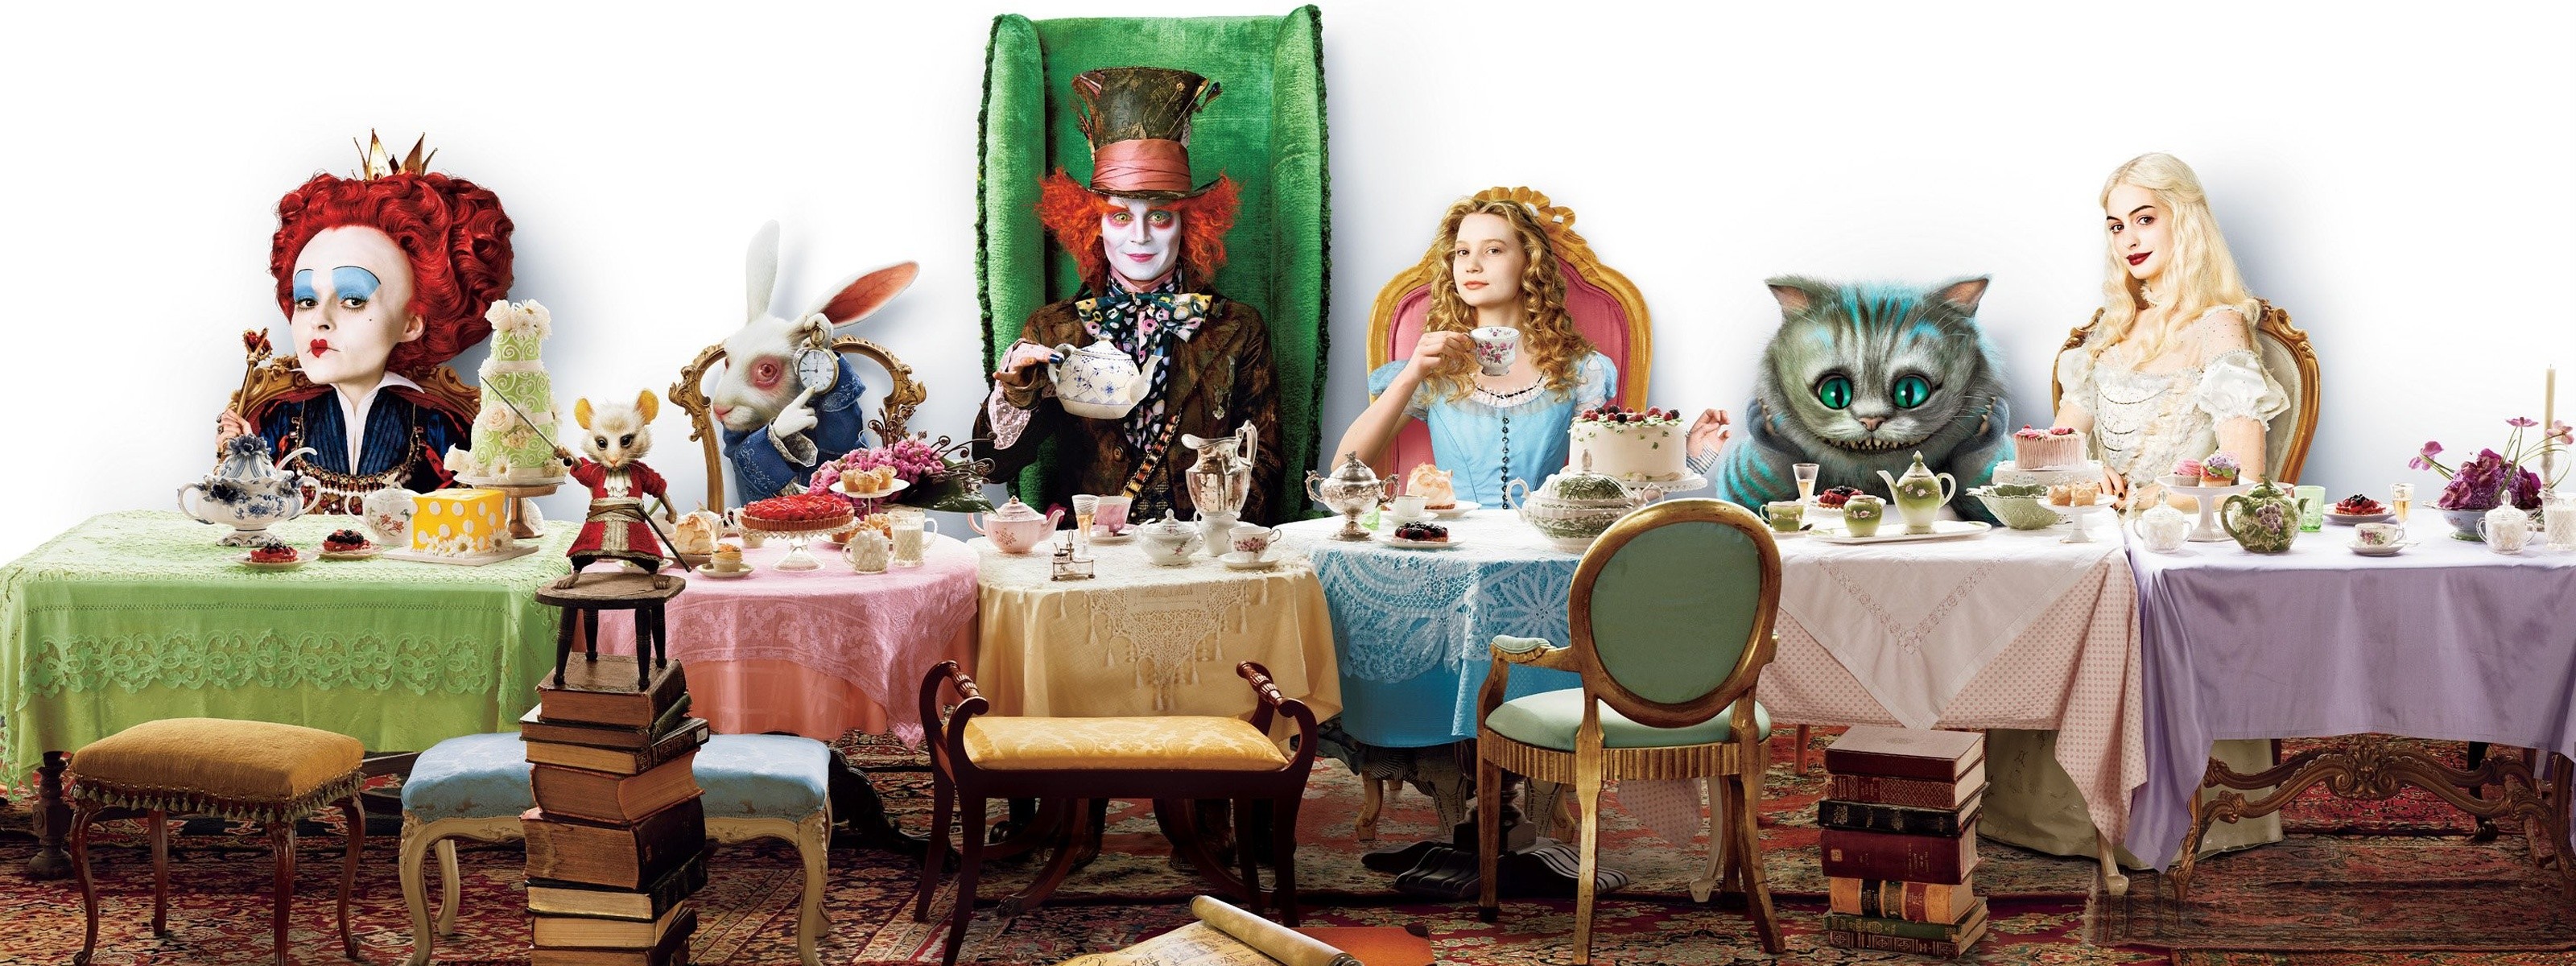 Alice In Wonderland Johnny Depp Movies Mad Hatter 3200x1200